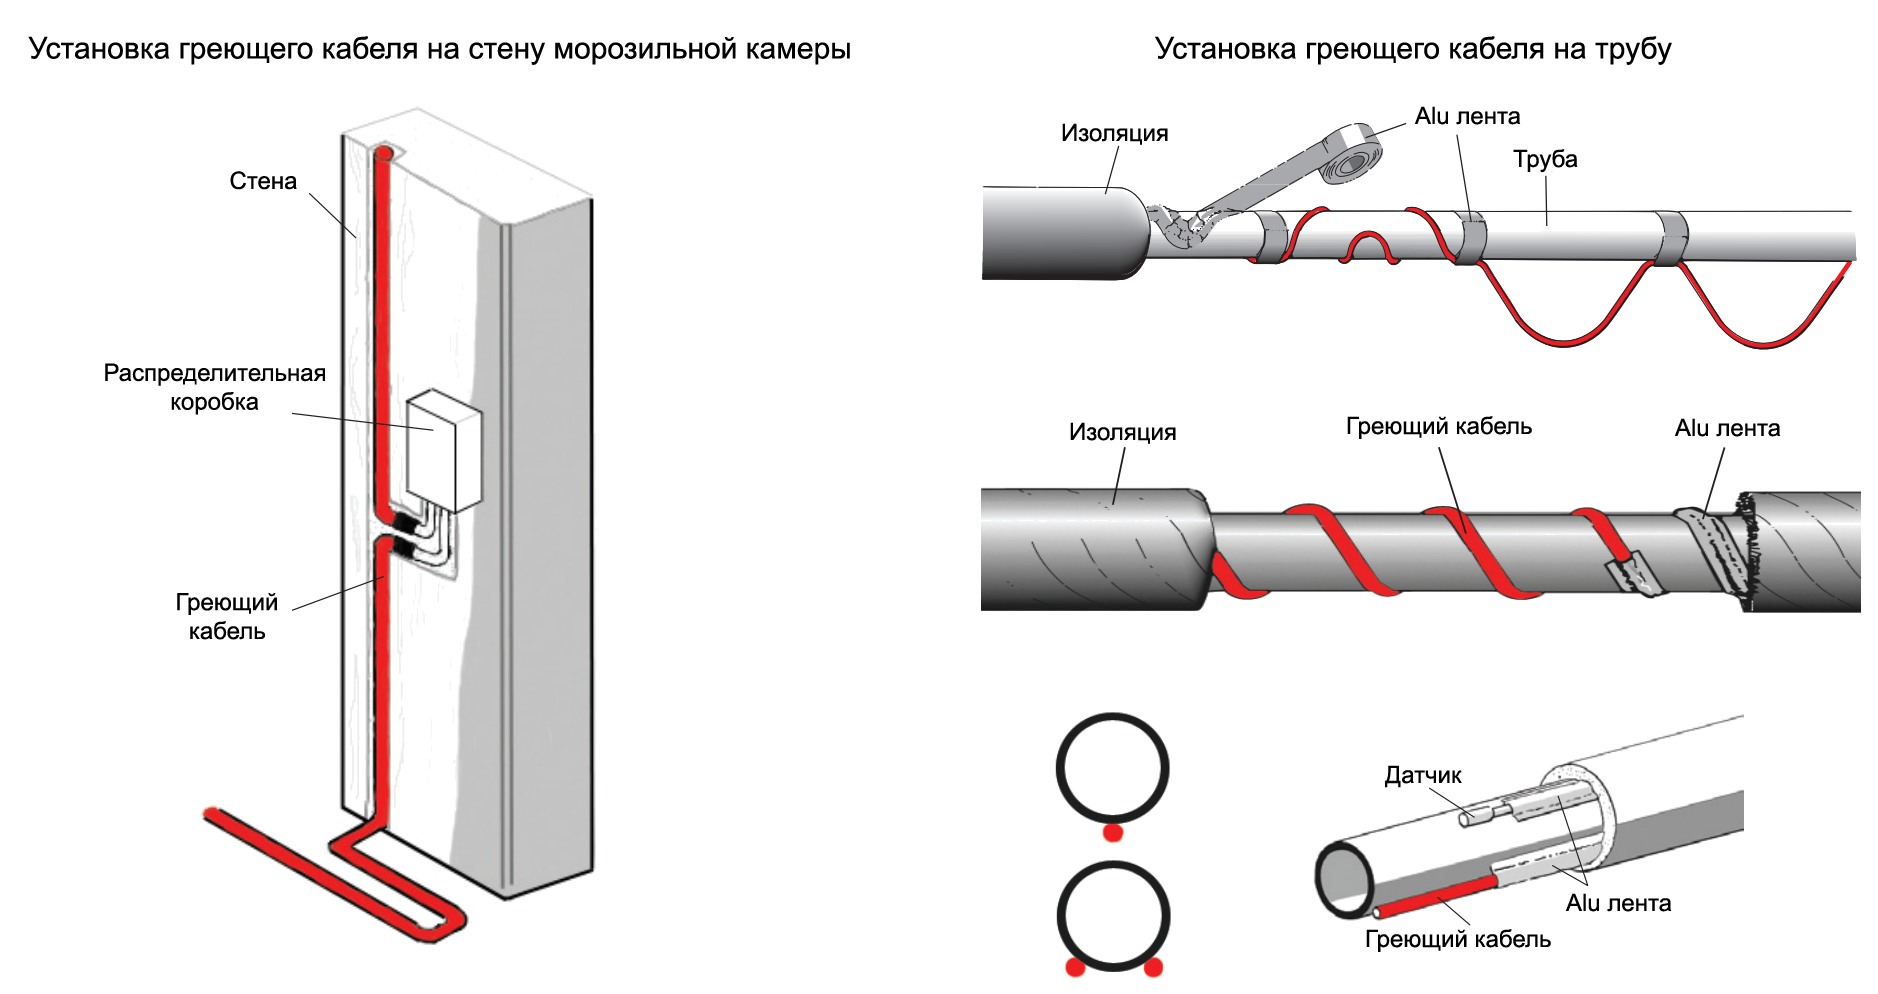 Греющий кабель для водопровода внутри трубы: виды кабеля, особенности монтажа / водопровод / публикации / санитарно-технические работы